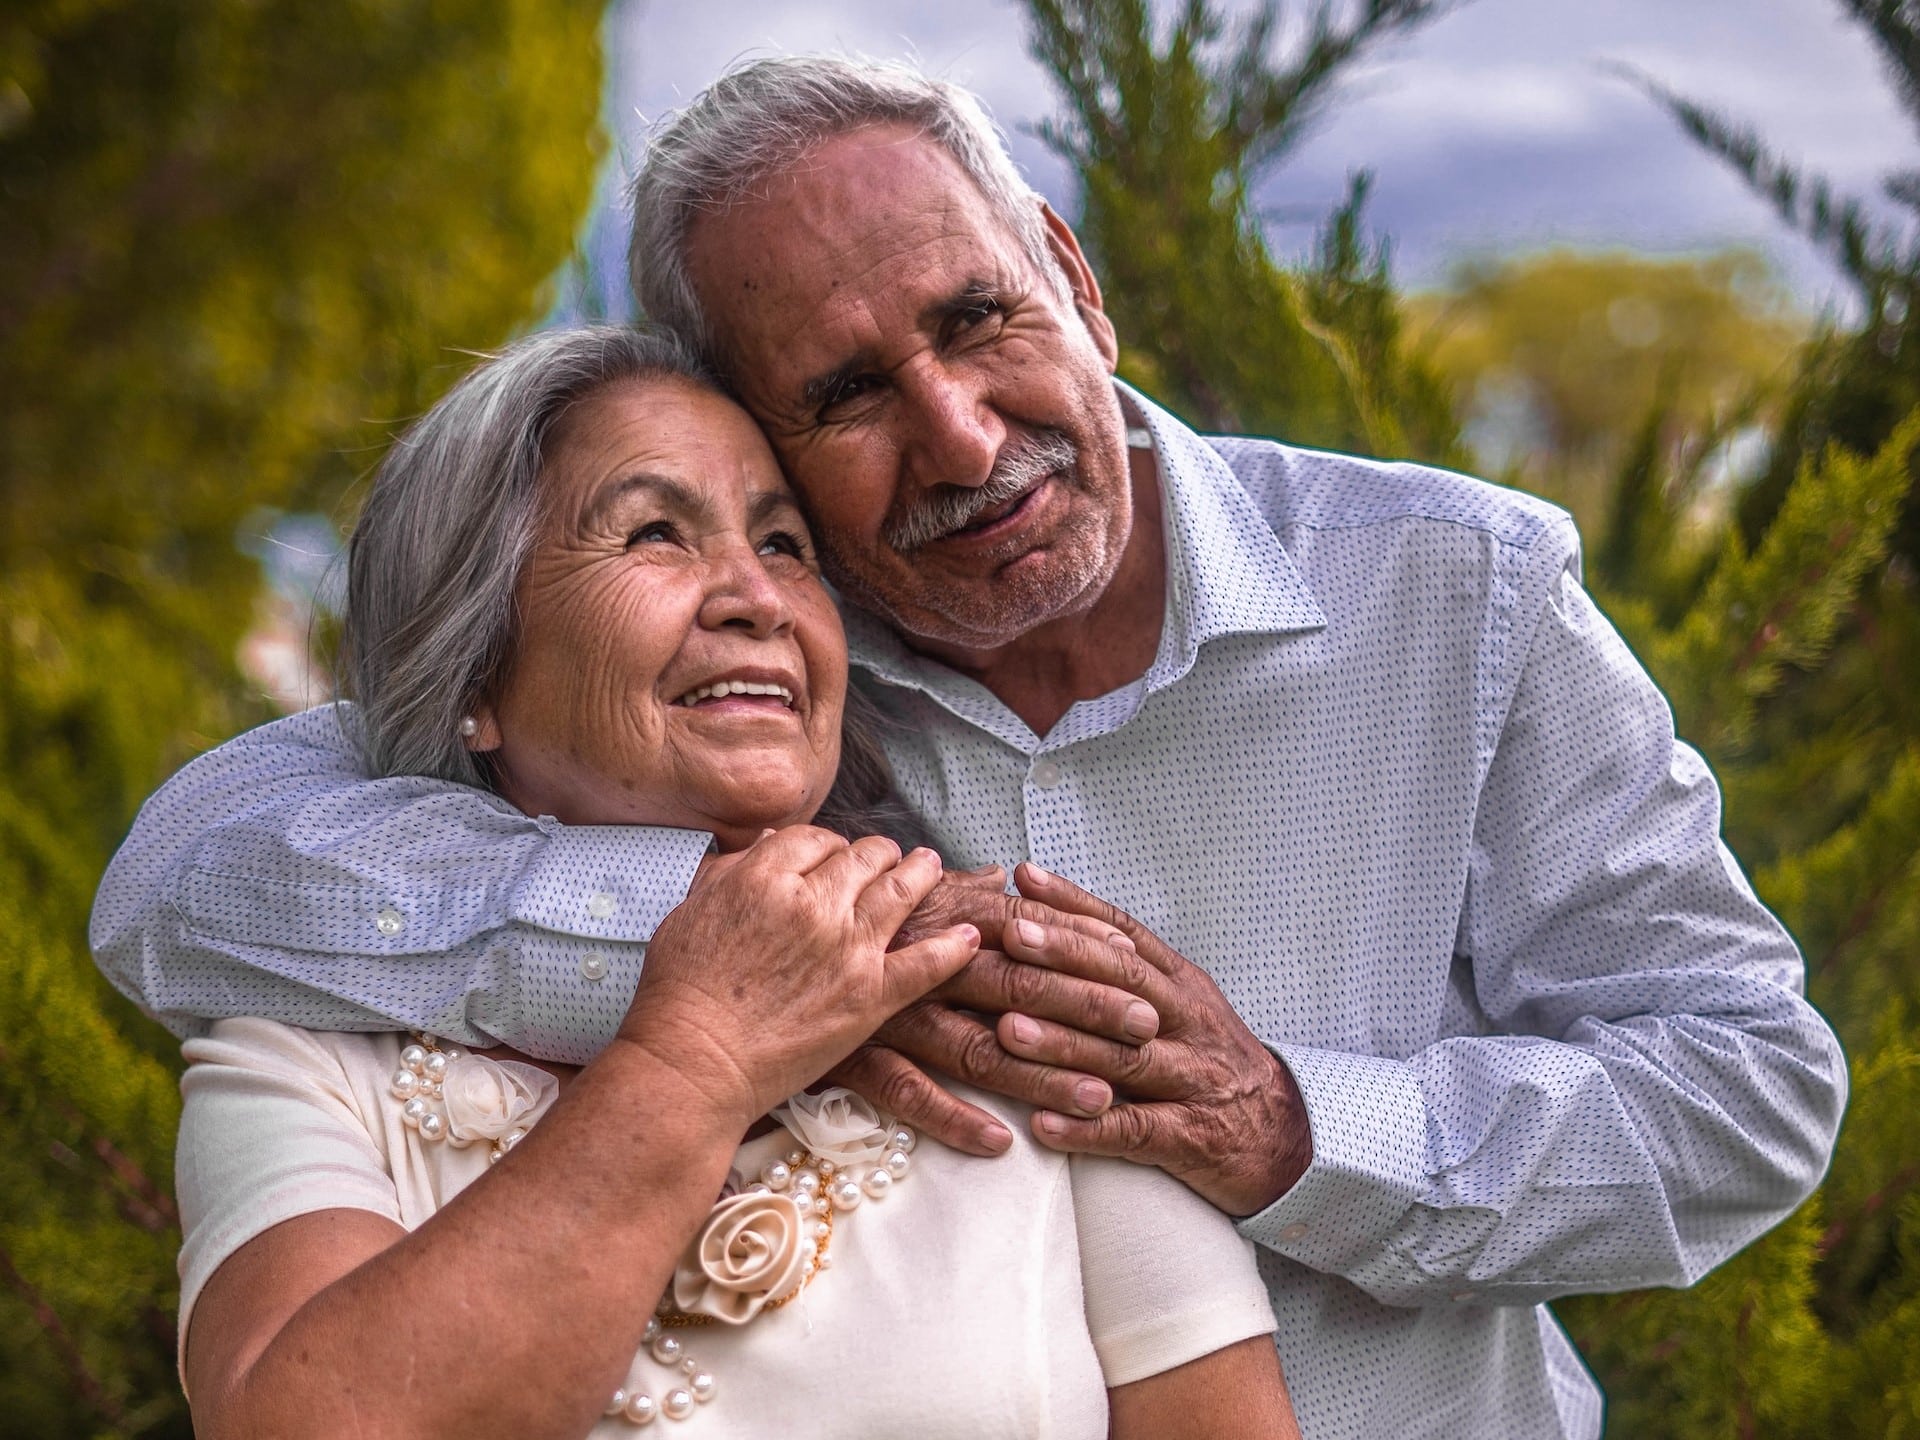 Un récepteur immunitaire clé identifié pour le vieillissement en bonne santé et l’espérance de vie